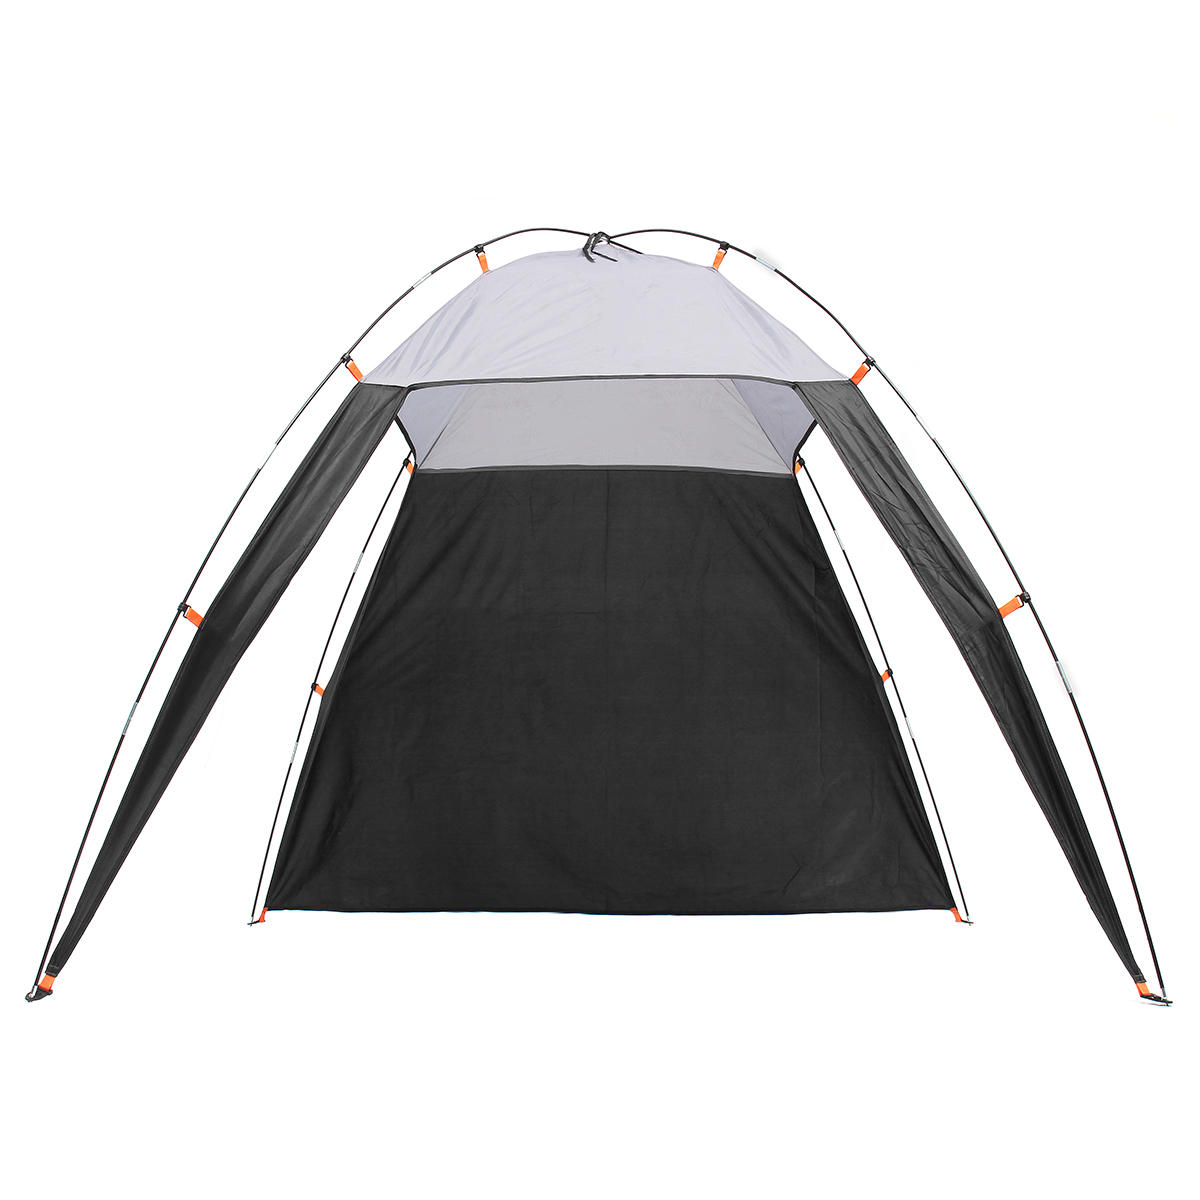 العربية: خيمة مثلثية مقاومة للماء ومظلة شمسية لـ 5-8 أشخاص ، مثالية للتخييم والمشي لمسافات طويلة على الشاطئ في الهواء الطلق.